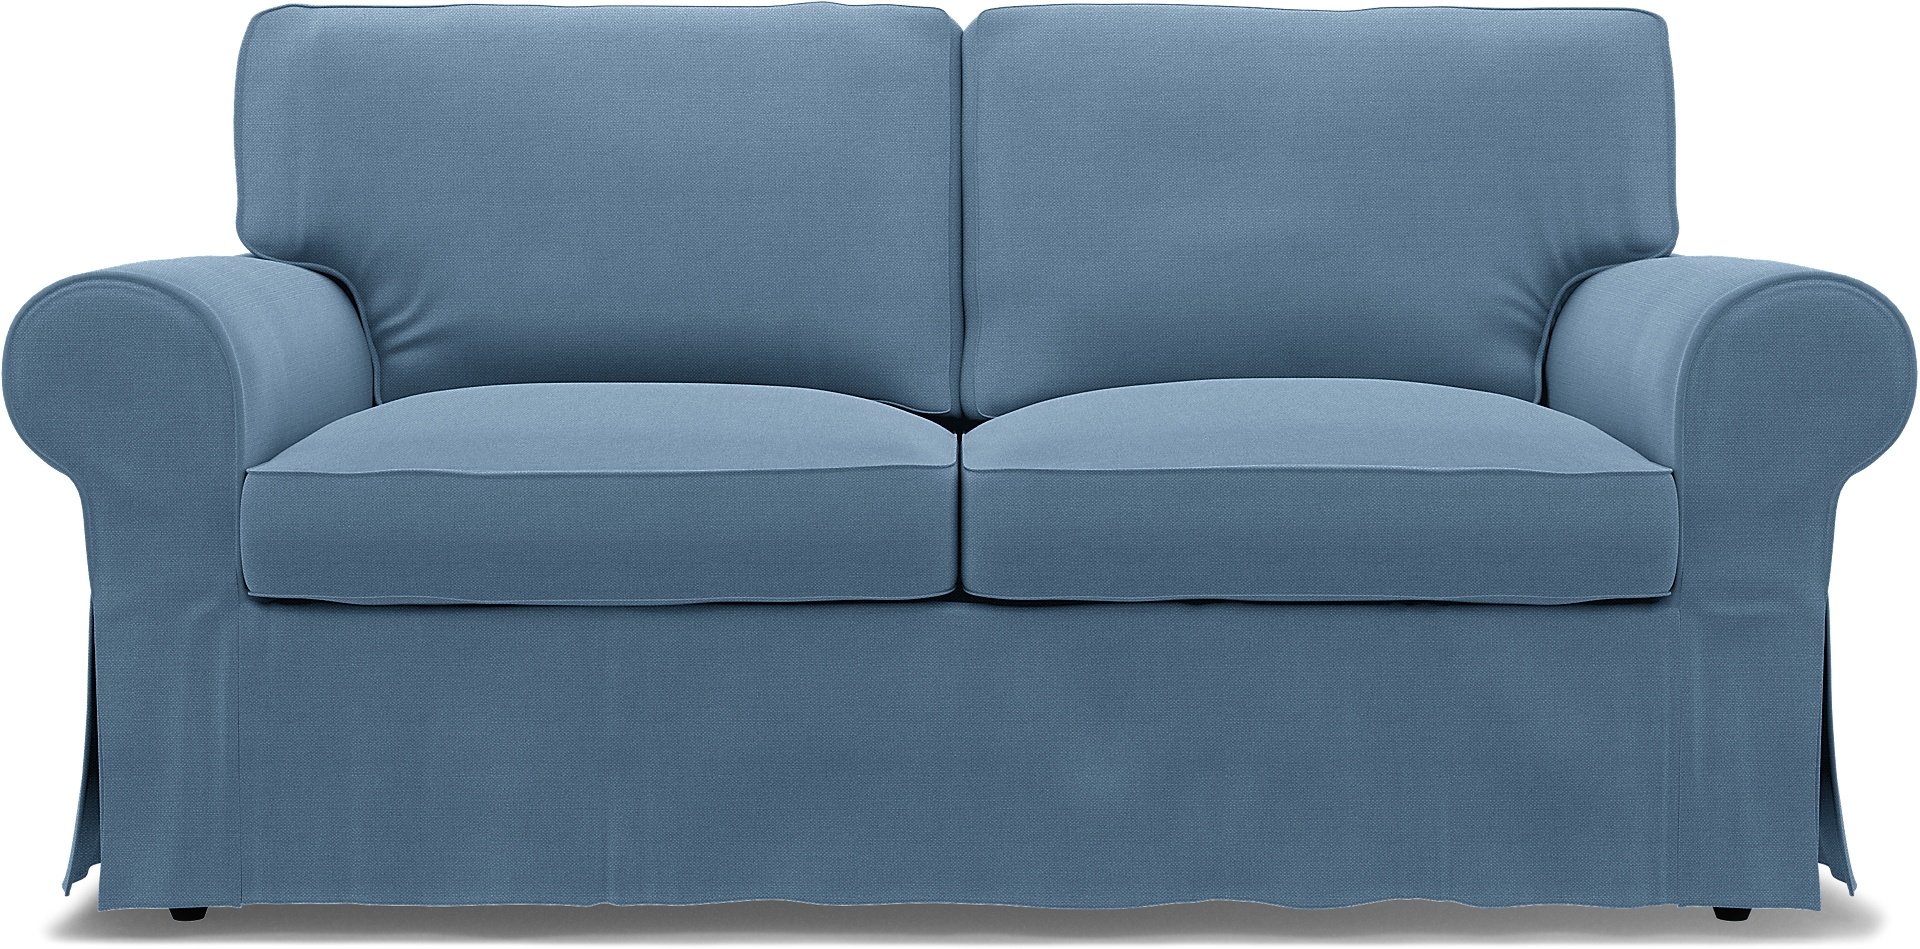 IKEA - Ektorp 2 Seater Sofa Bed Cover, Vintage Blue, Linen - Bemz